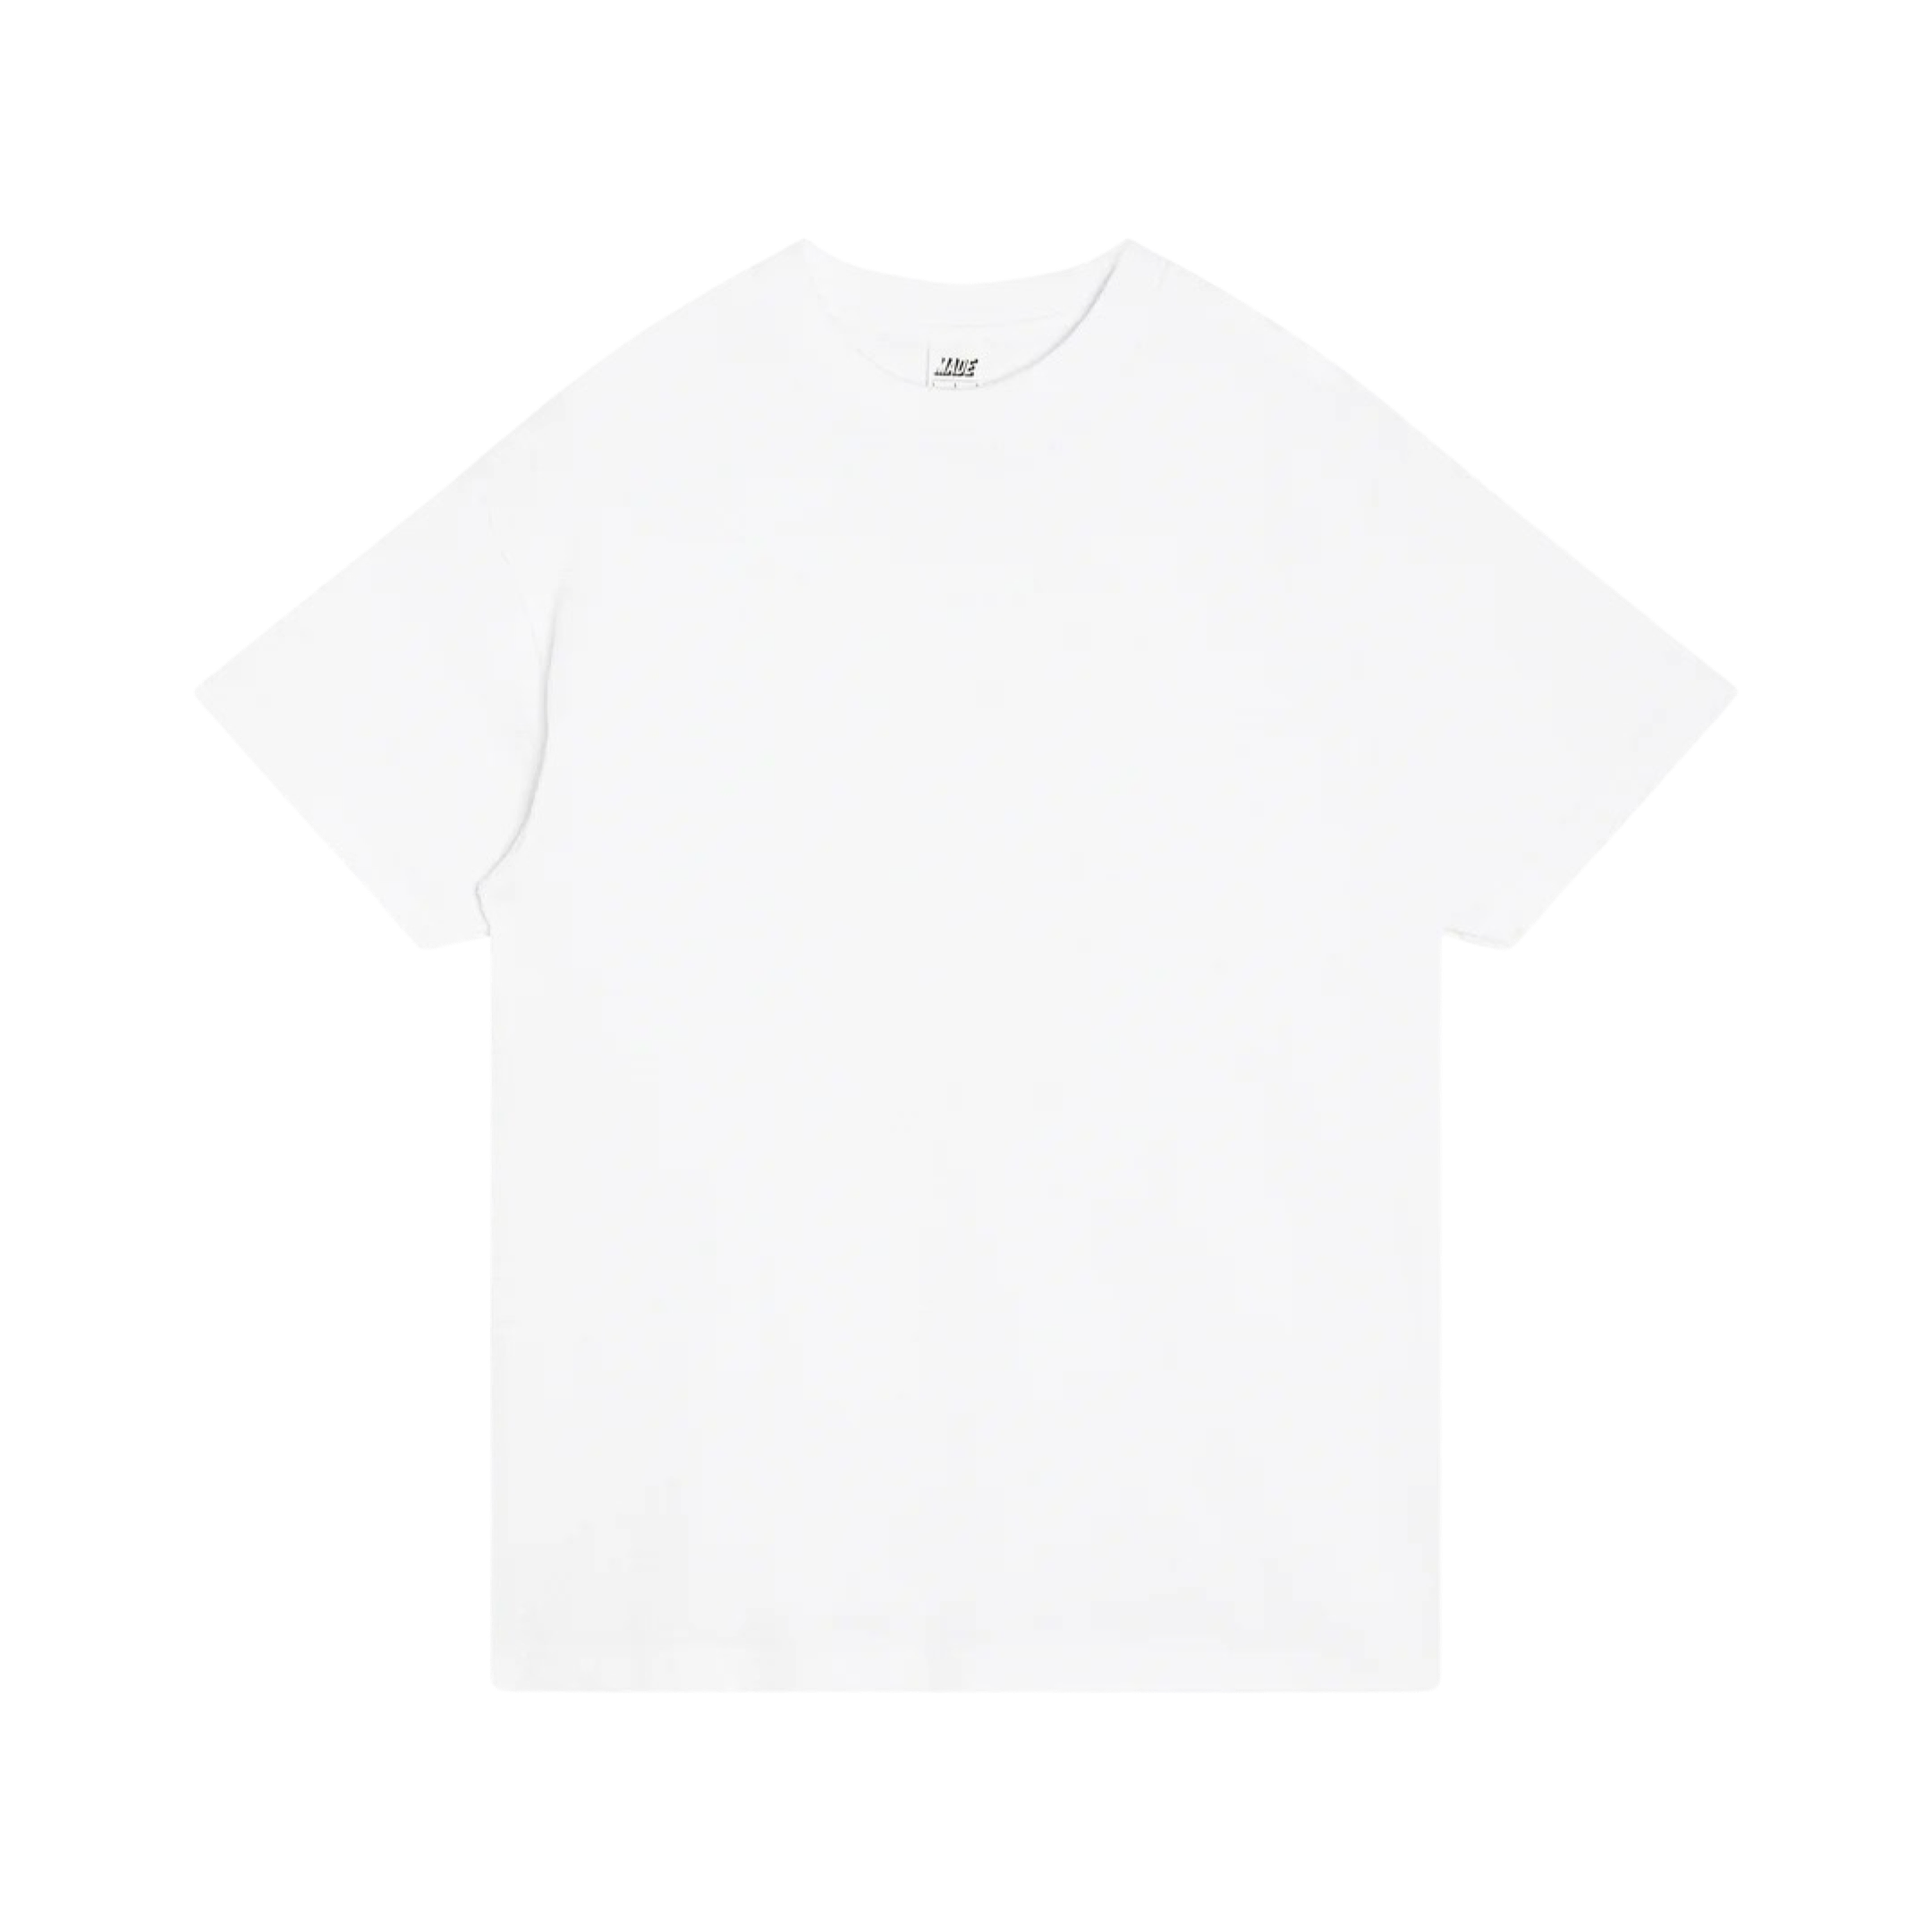 Made Blanks Homeroom T-Shirt Phantom Black / XL